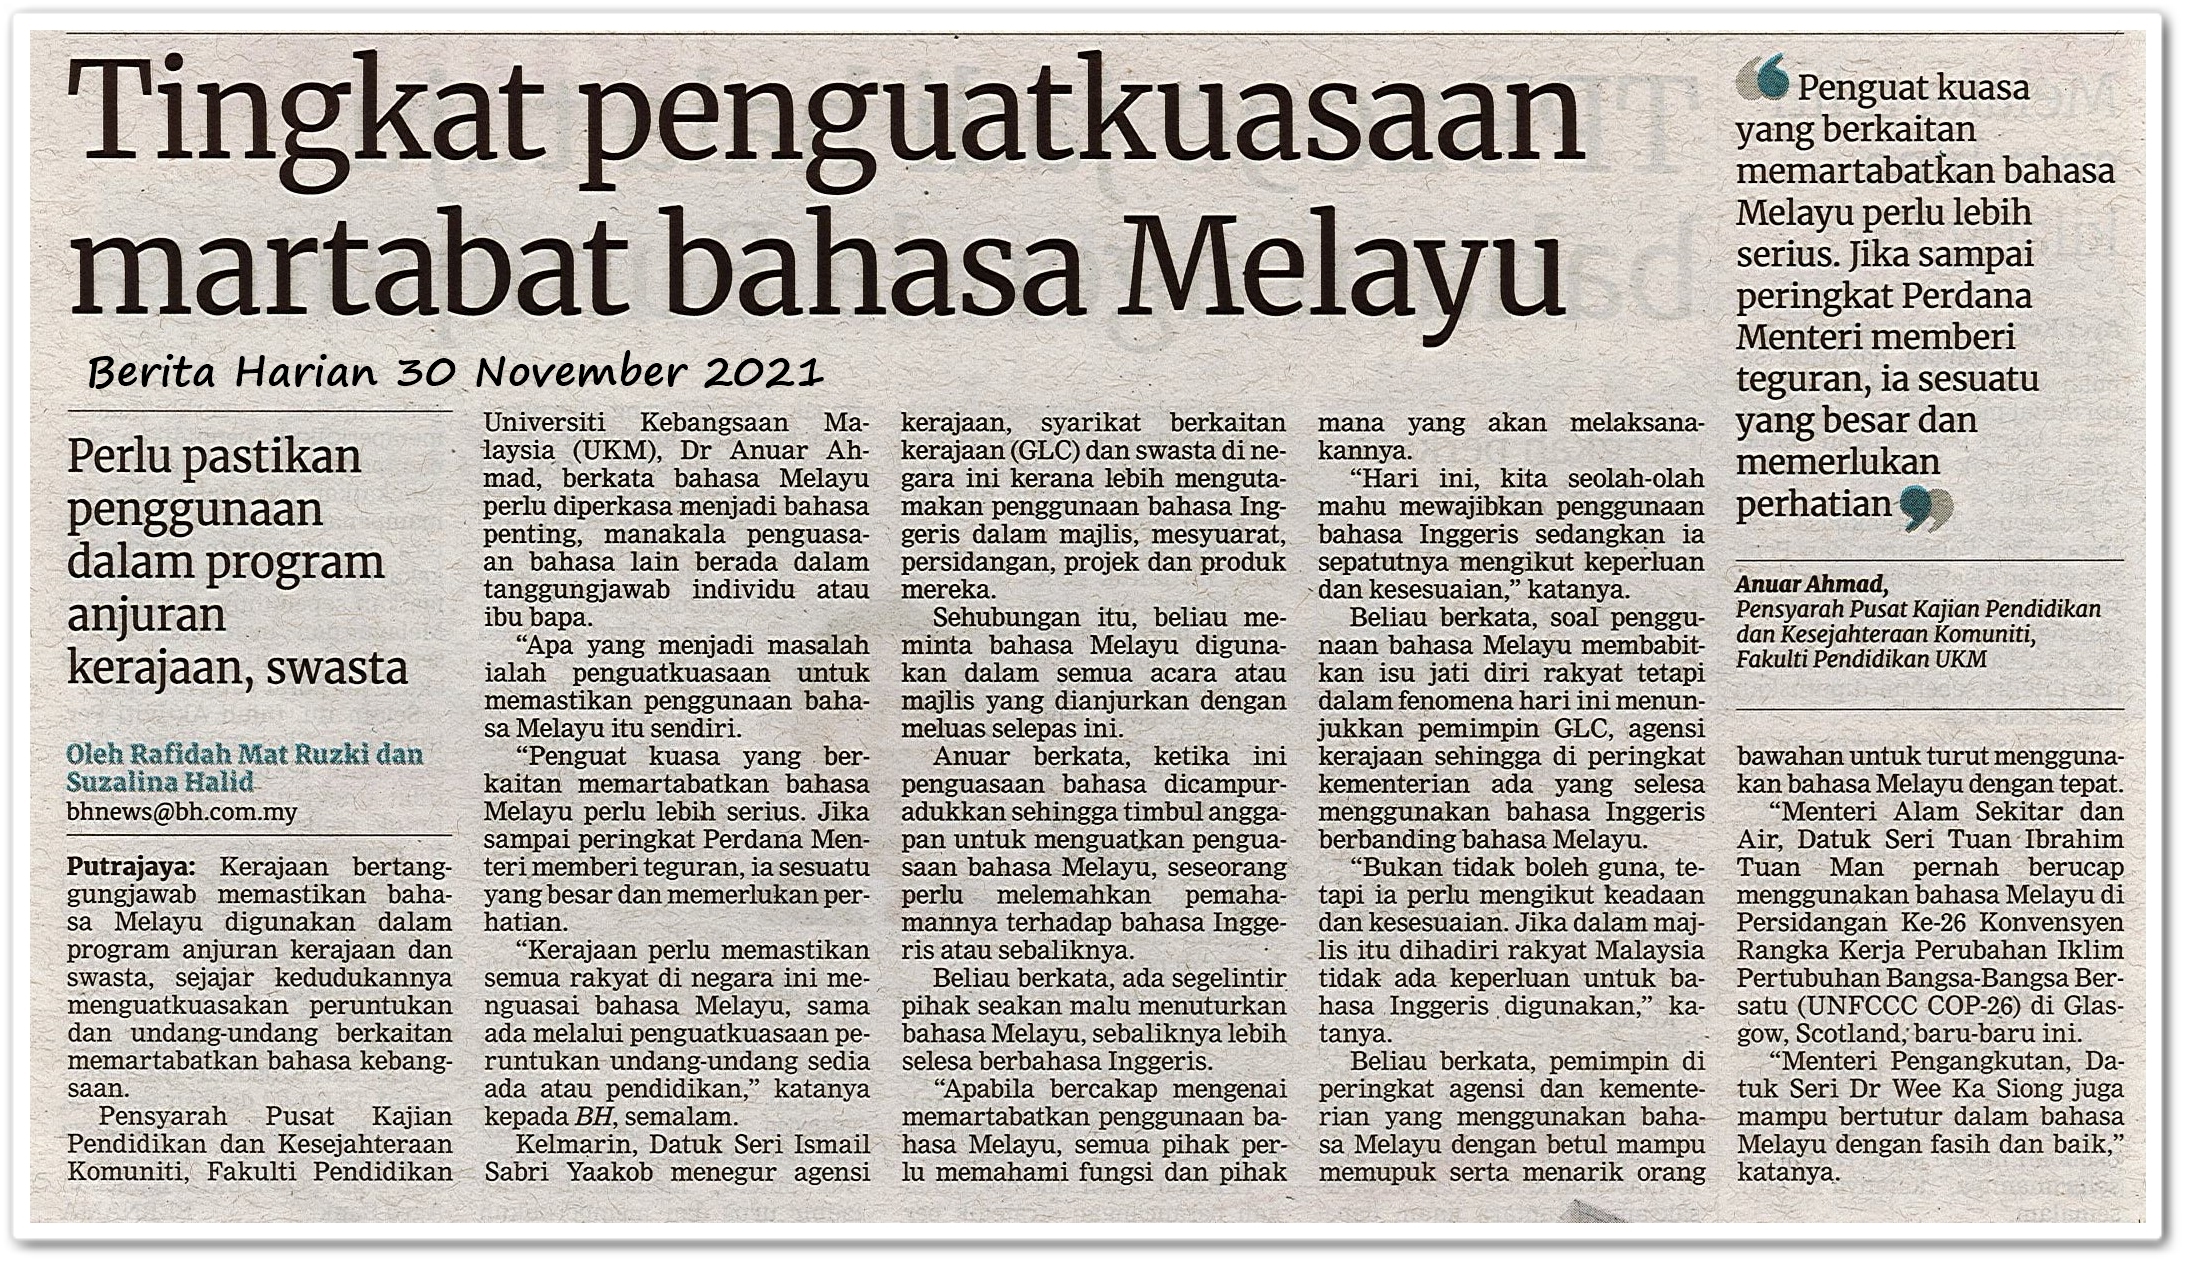 Tingkatkan penguatkuasaan martabat bahasa Melayu - Keratan akhbar Berita Harian 30 November 2021